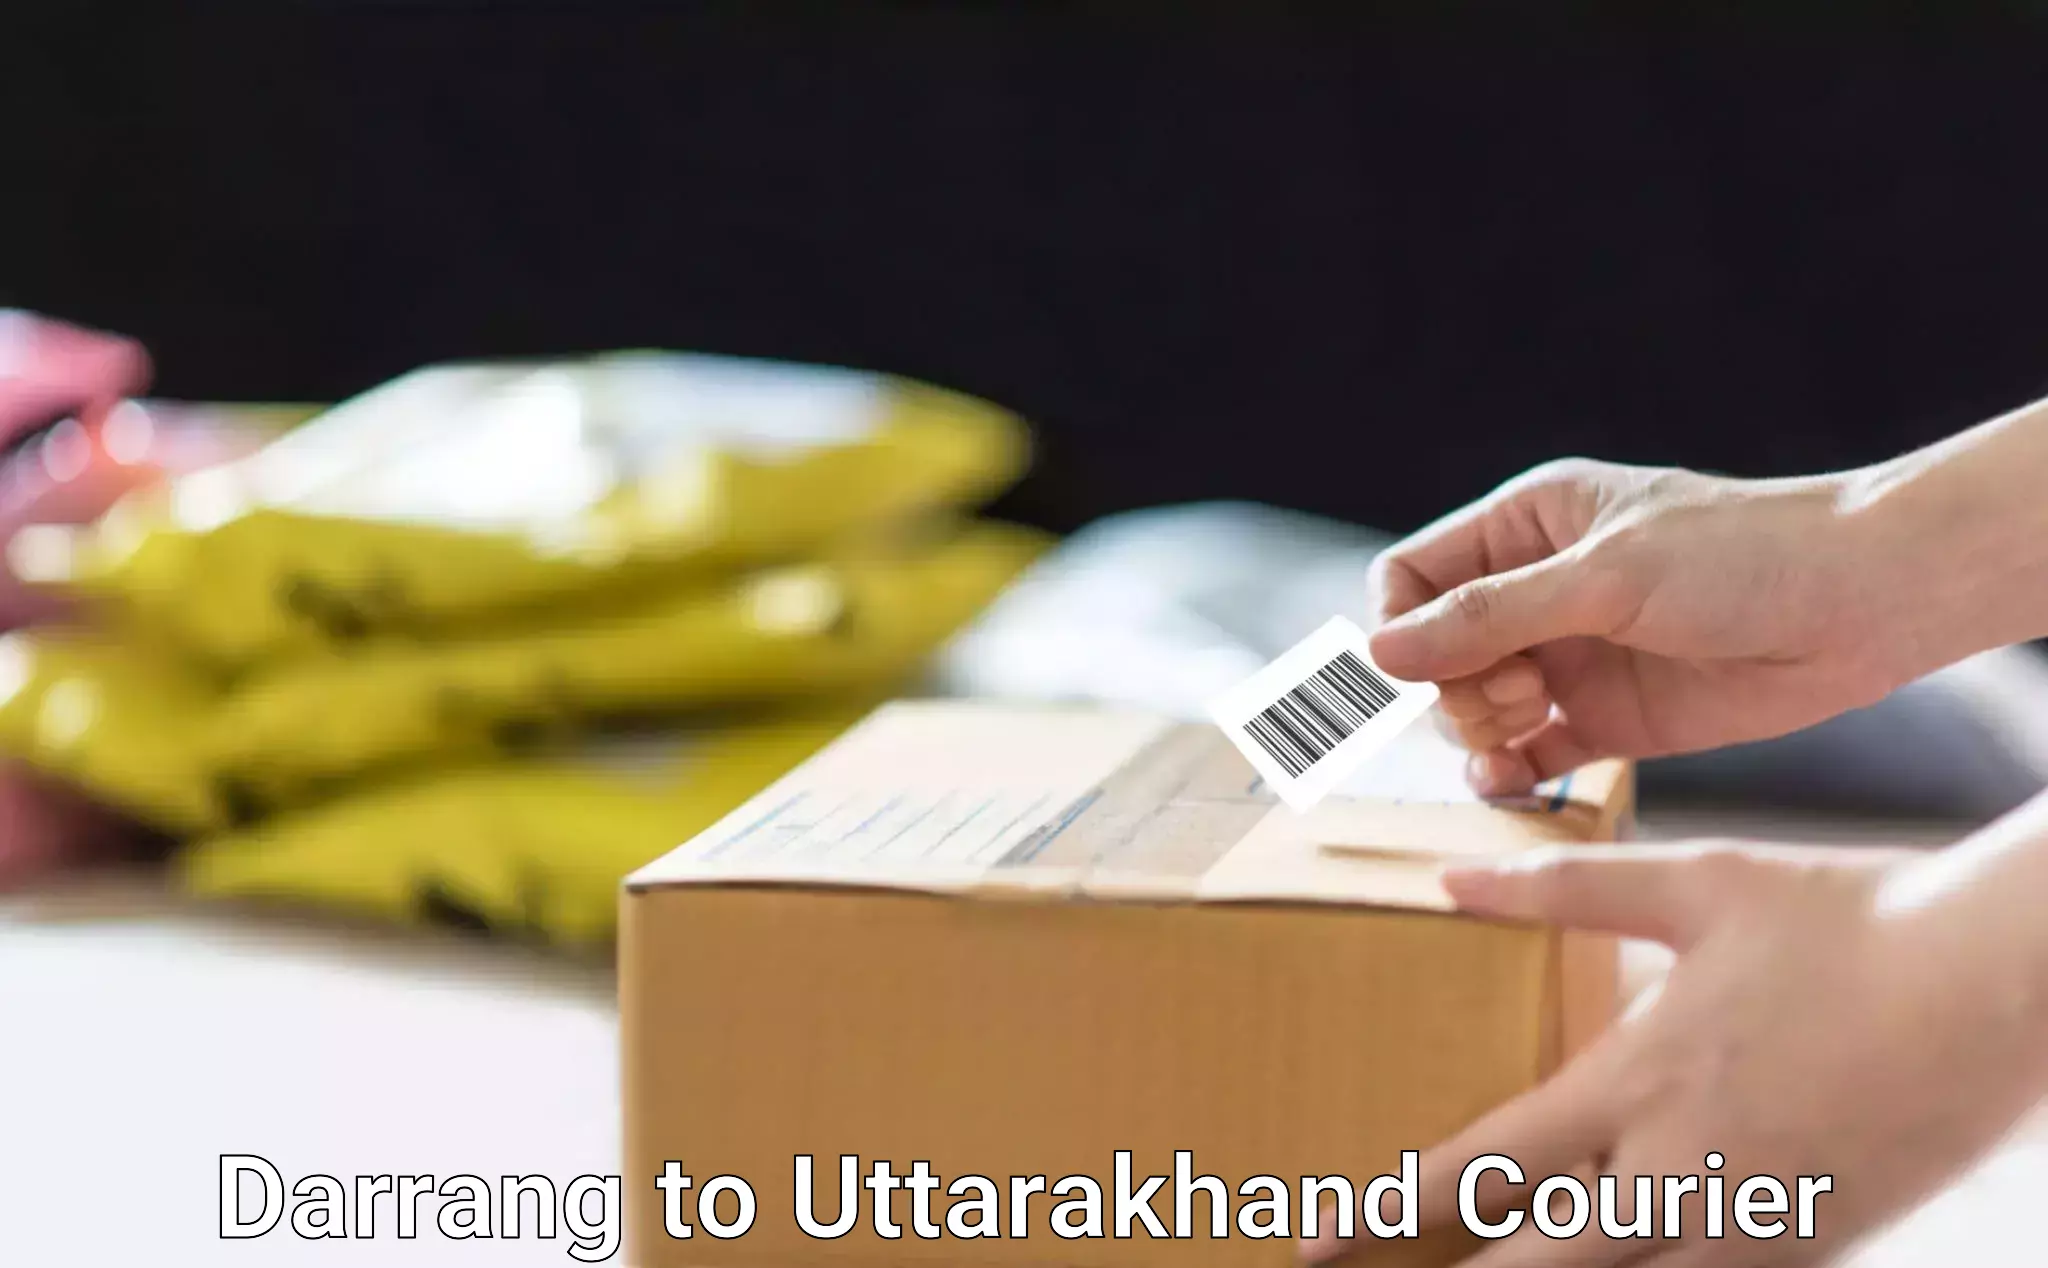 Bulk courier orders Darrang to Uttarakhand